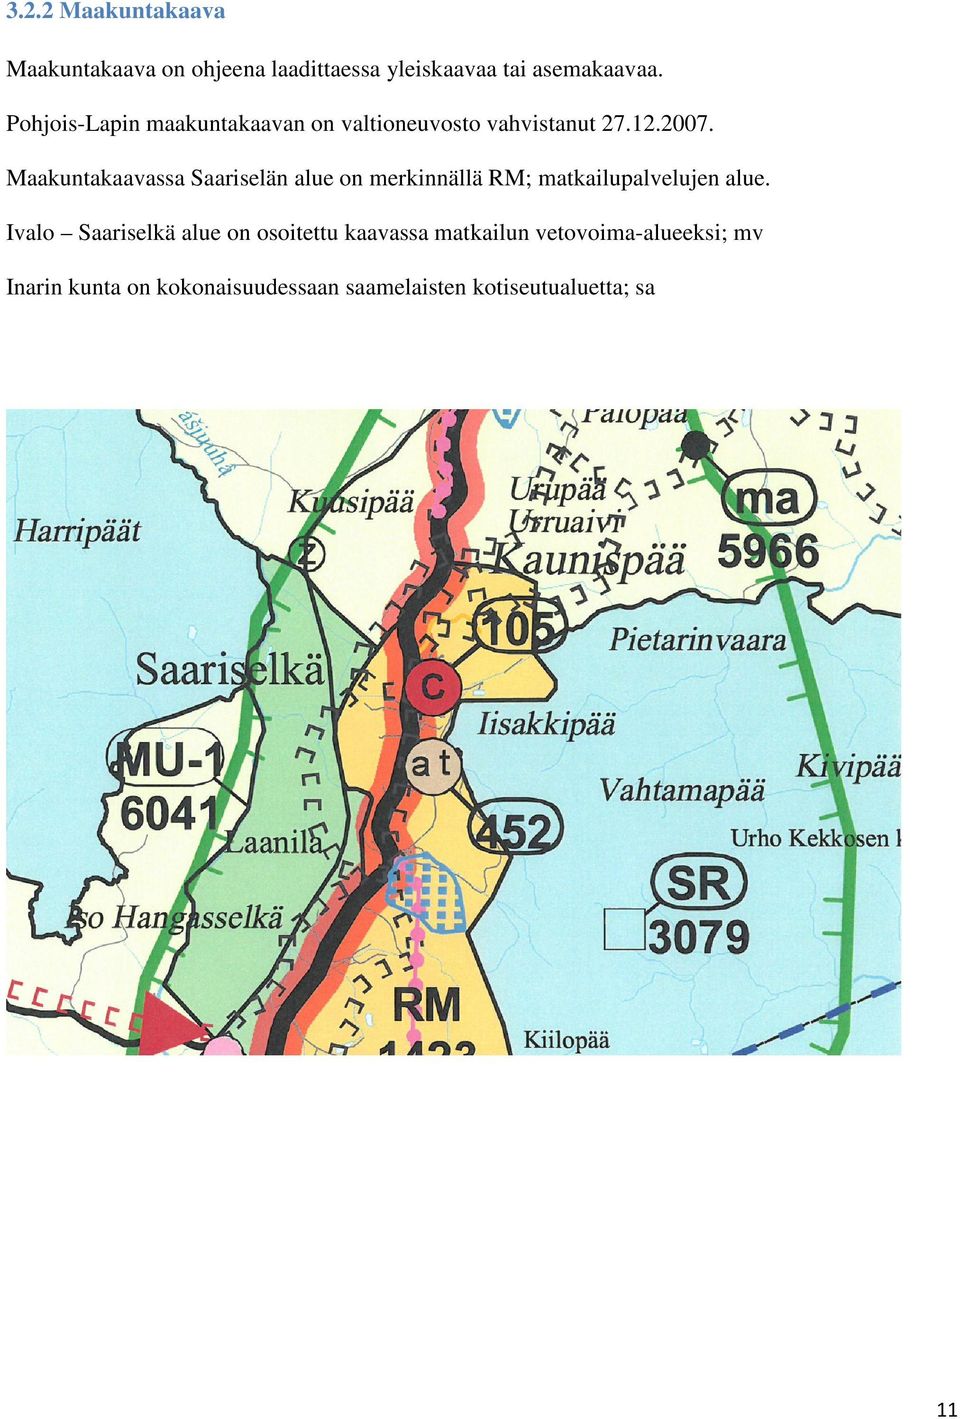 Maakuntakaavassa Saariselän alue on merkinnällä RM; matkailupalvelujen alue.